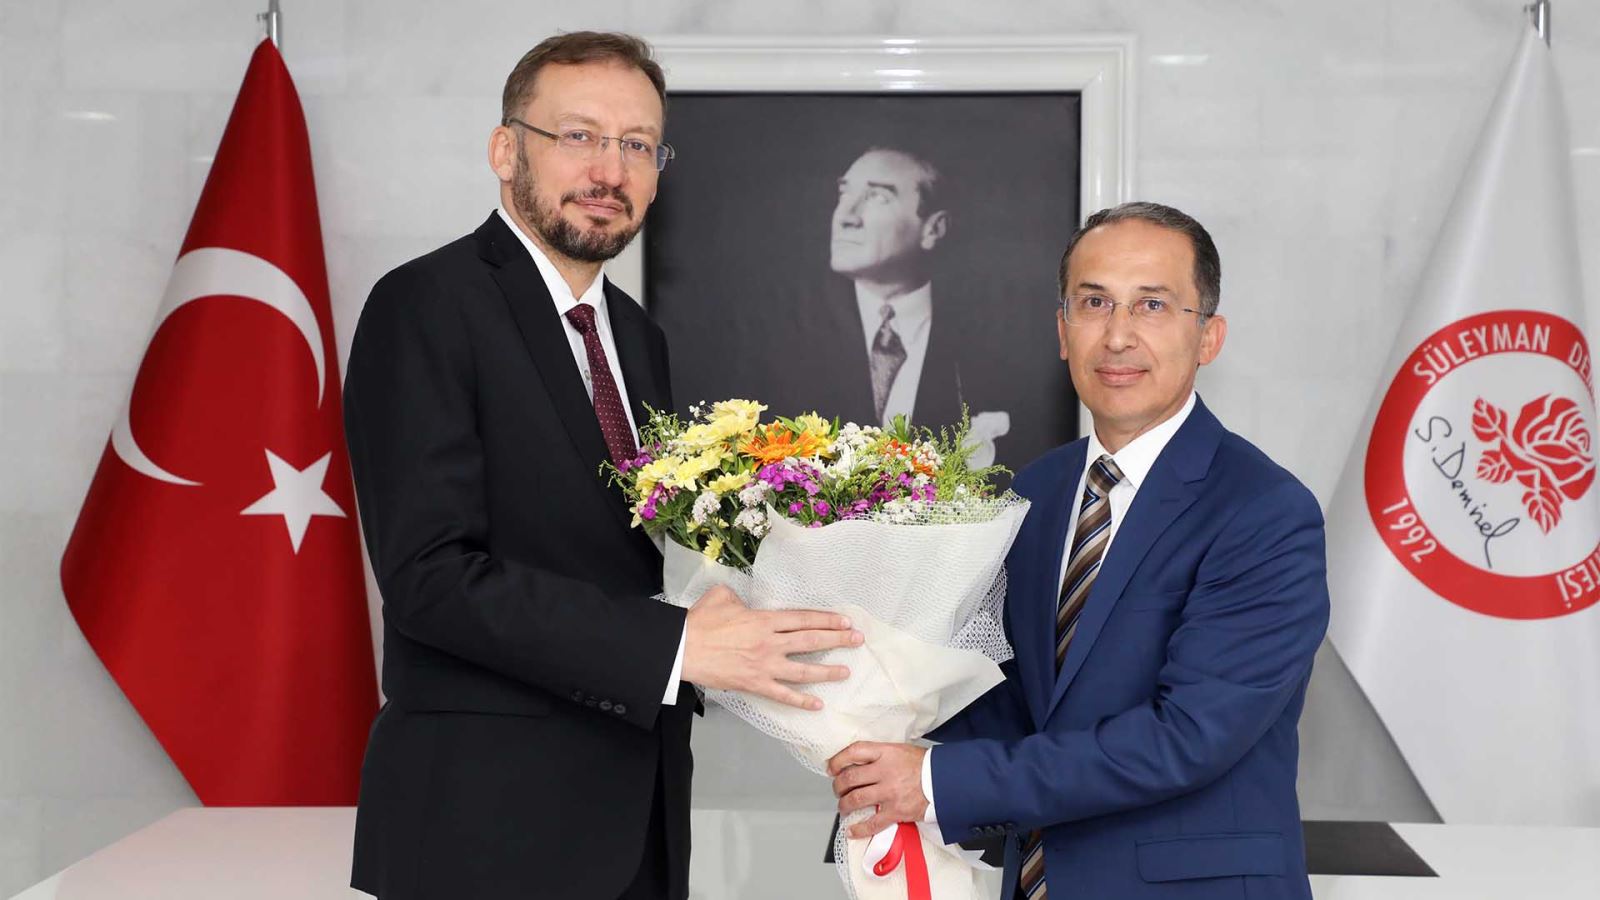 Prof. Dr. Mehmet Saltan Görevi Prof. Dr. İlker Hüseyin Çarıkçı’dan Devraldı